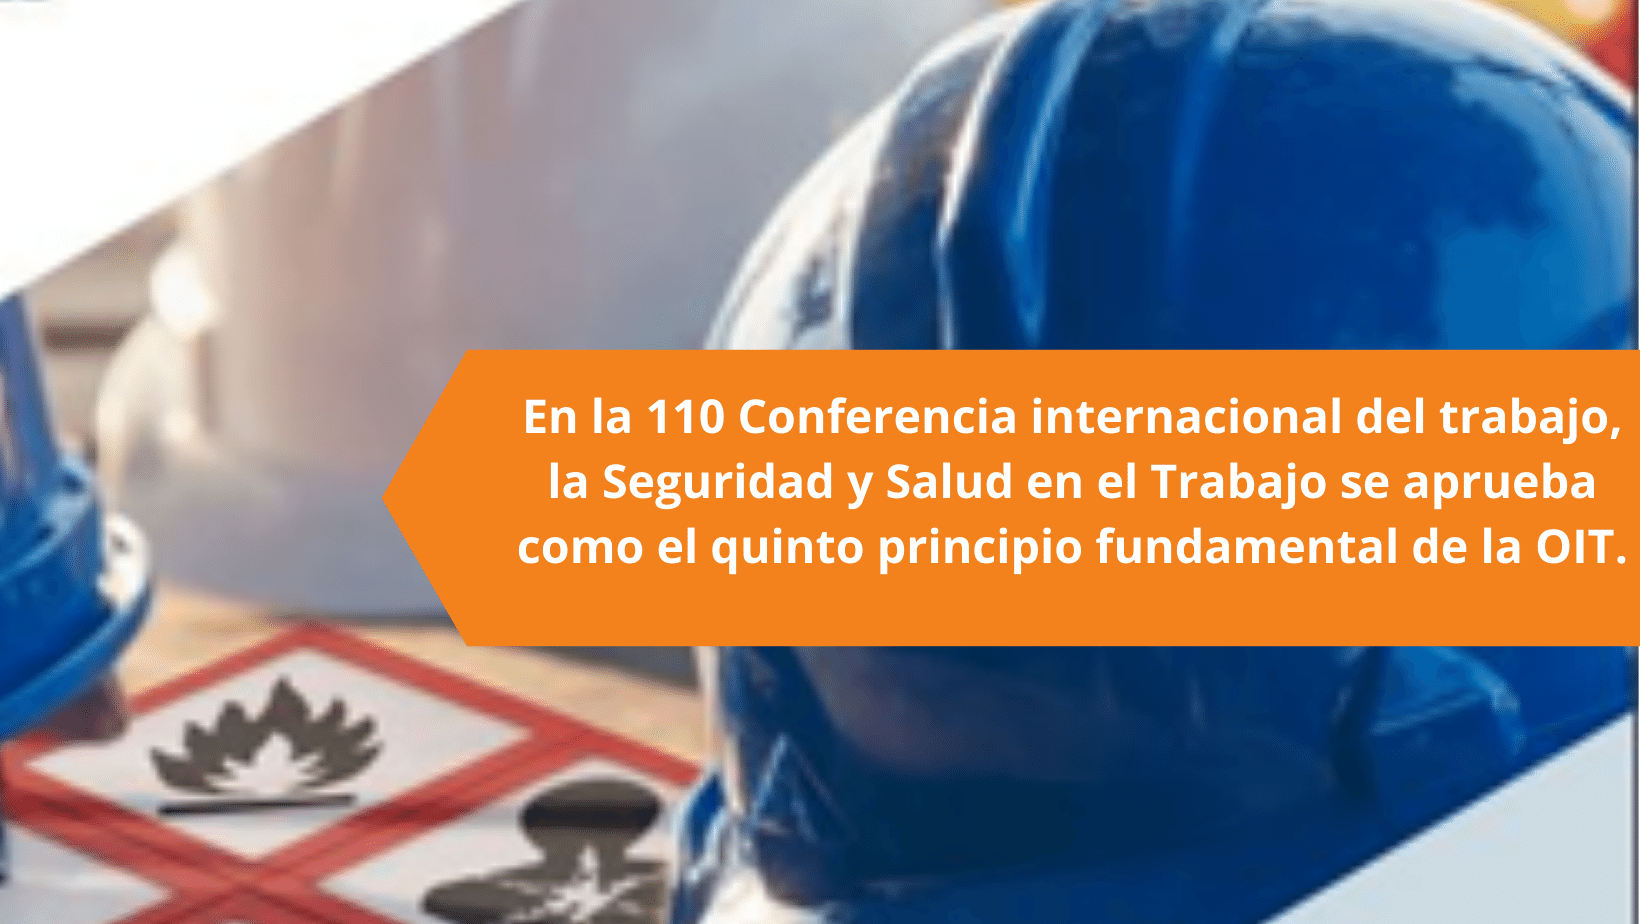 En la 110 Conferencia internacional del trabajo, la Seguridad y Salud en el Trabajo se aprueba como el quinto principio fundamental de la OIT.